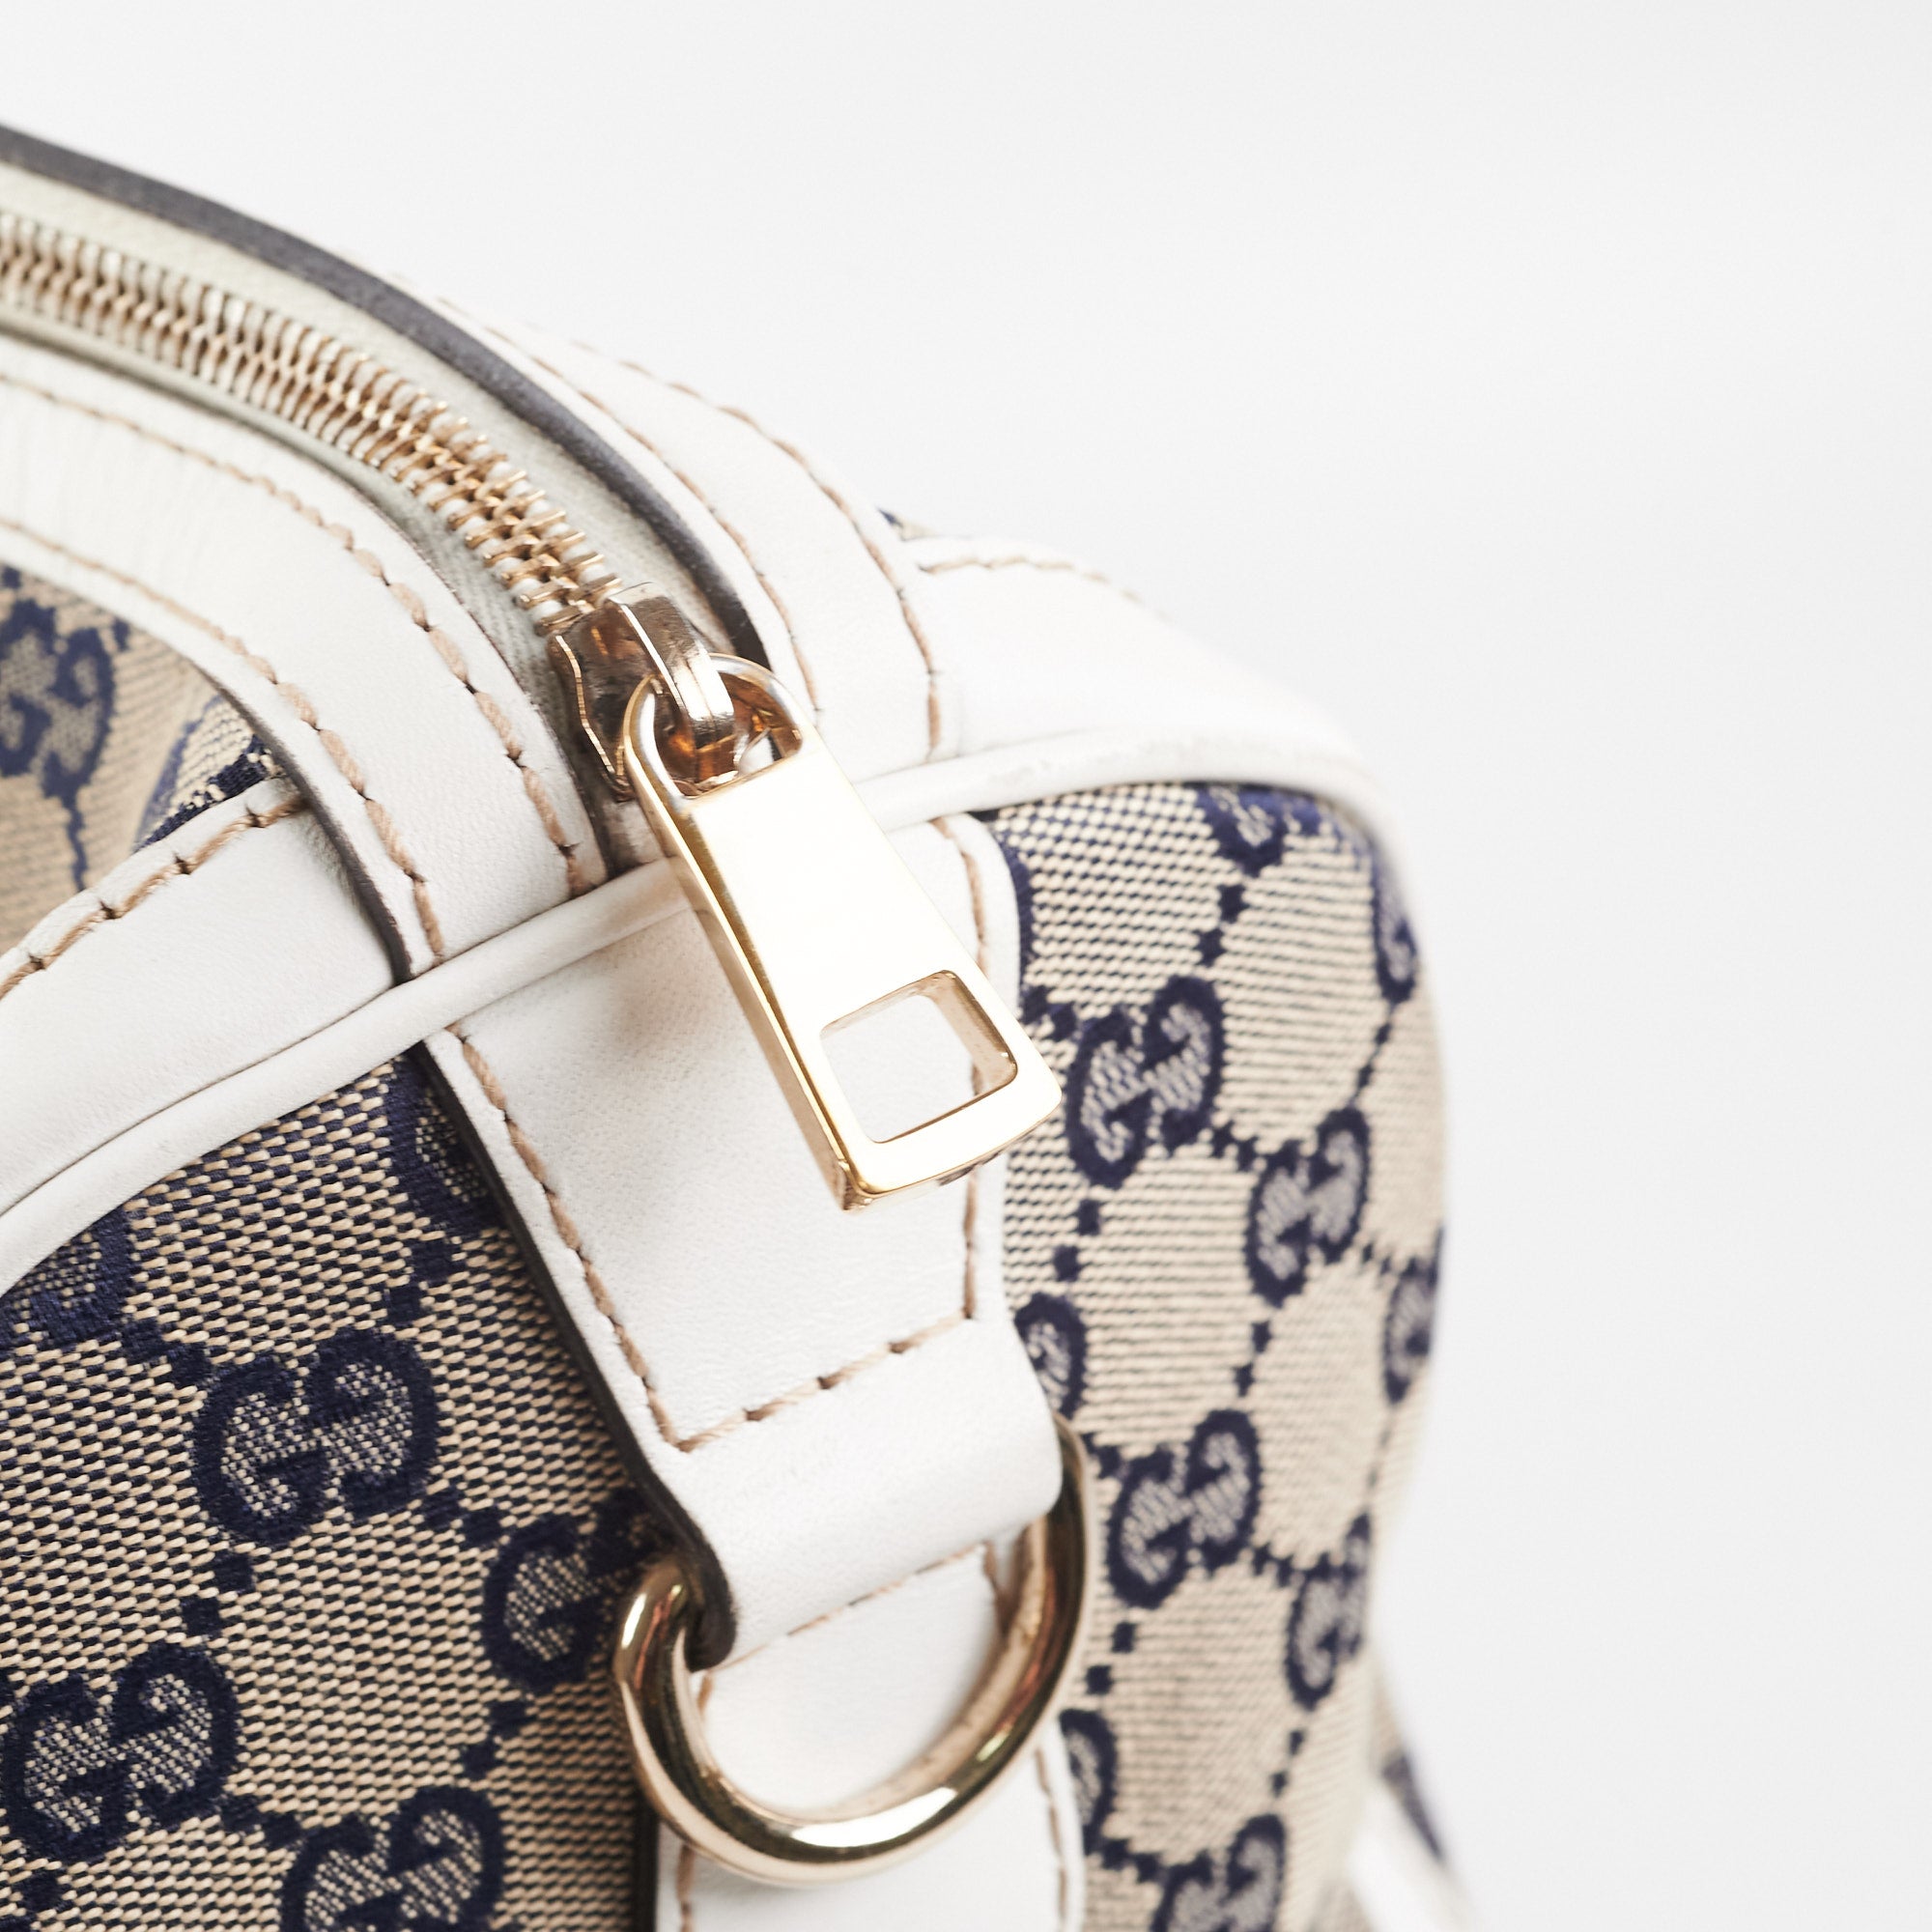 Gucci Boston Diamante Brown Bag - THE PURSE AFFAIR